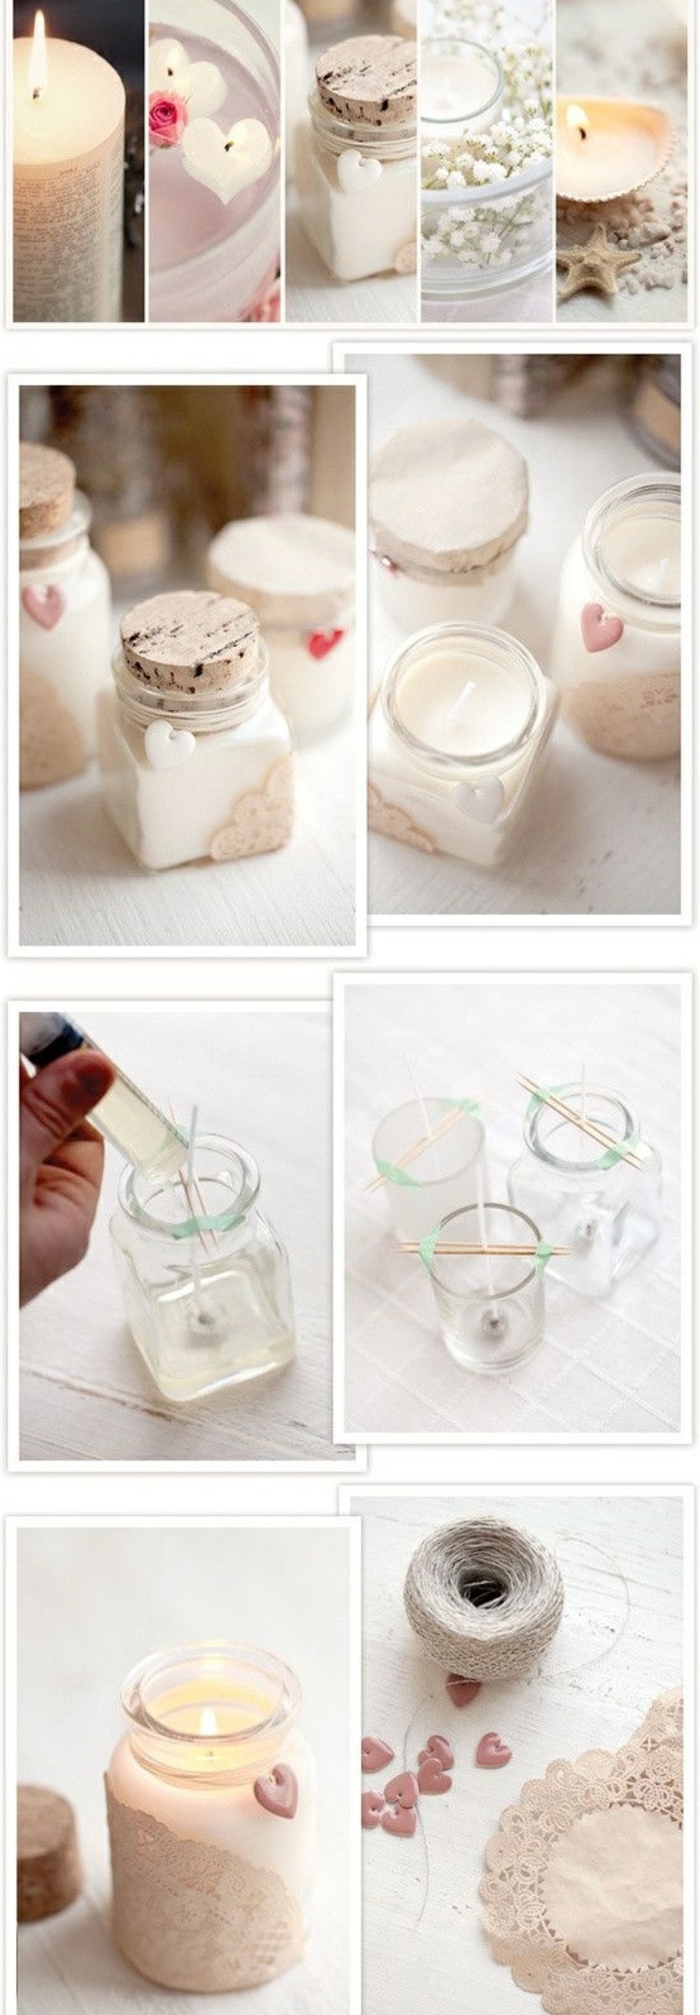 tutoriales en fotos sobre como hacer velas caseras paso a paso, frascos de vidrio decorativos con velas 